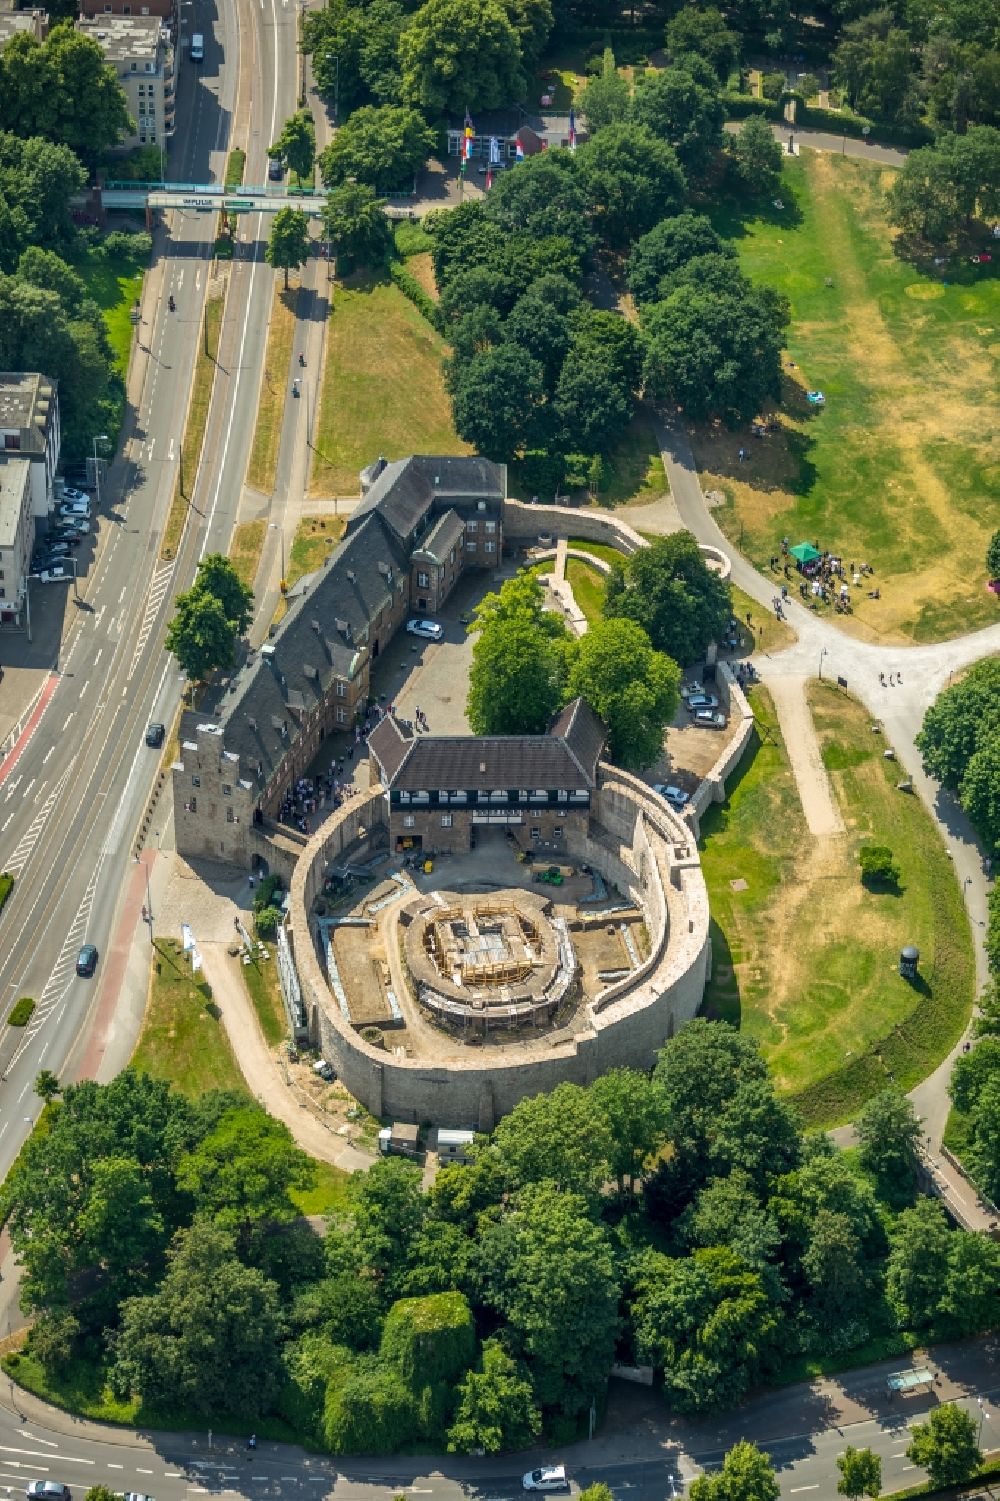 Luftbild Mülheim an der Ruhr - Burganlage des Schloss Broich in Mülheim an der Ruhr im Bundesland Nordrhein-Westfalen